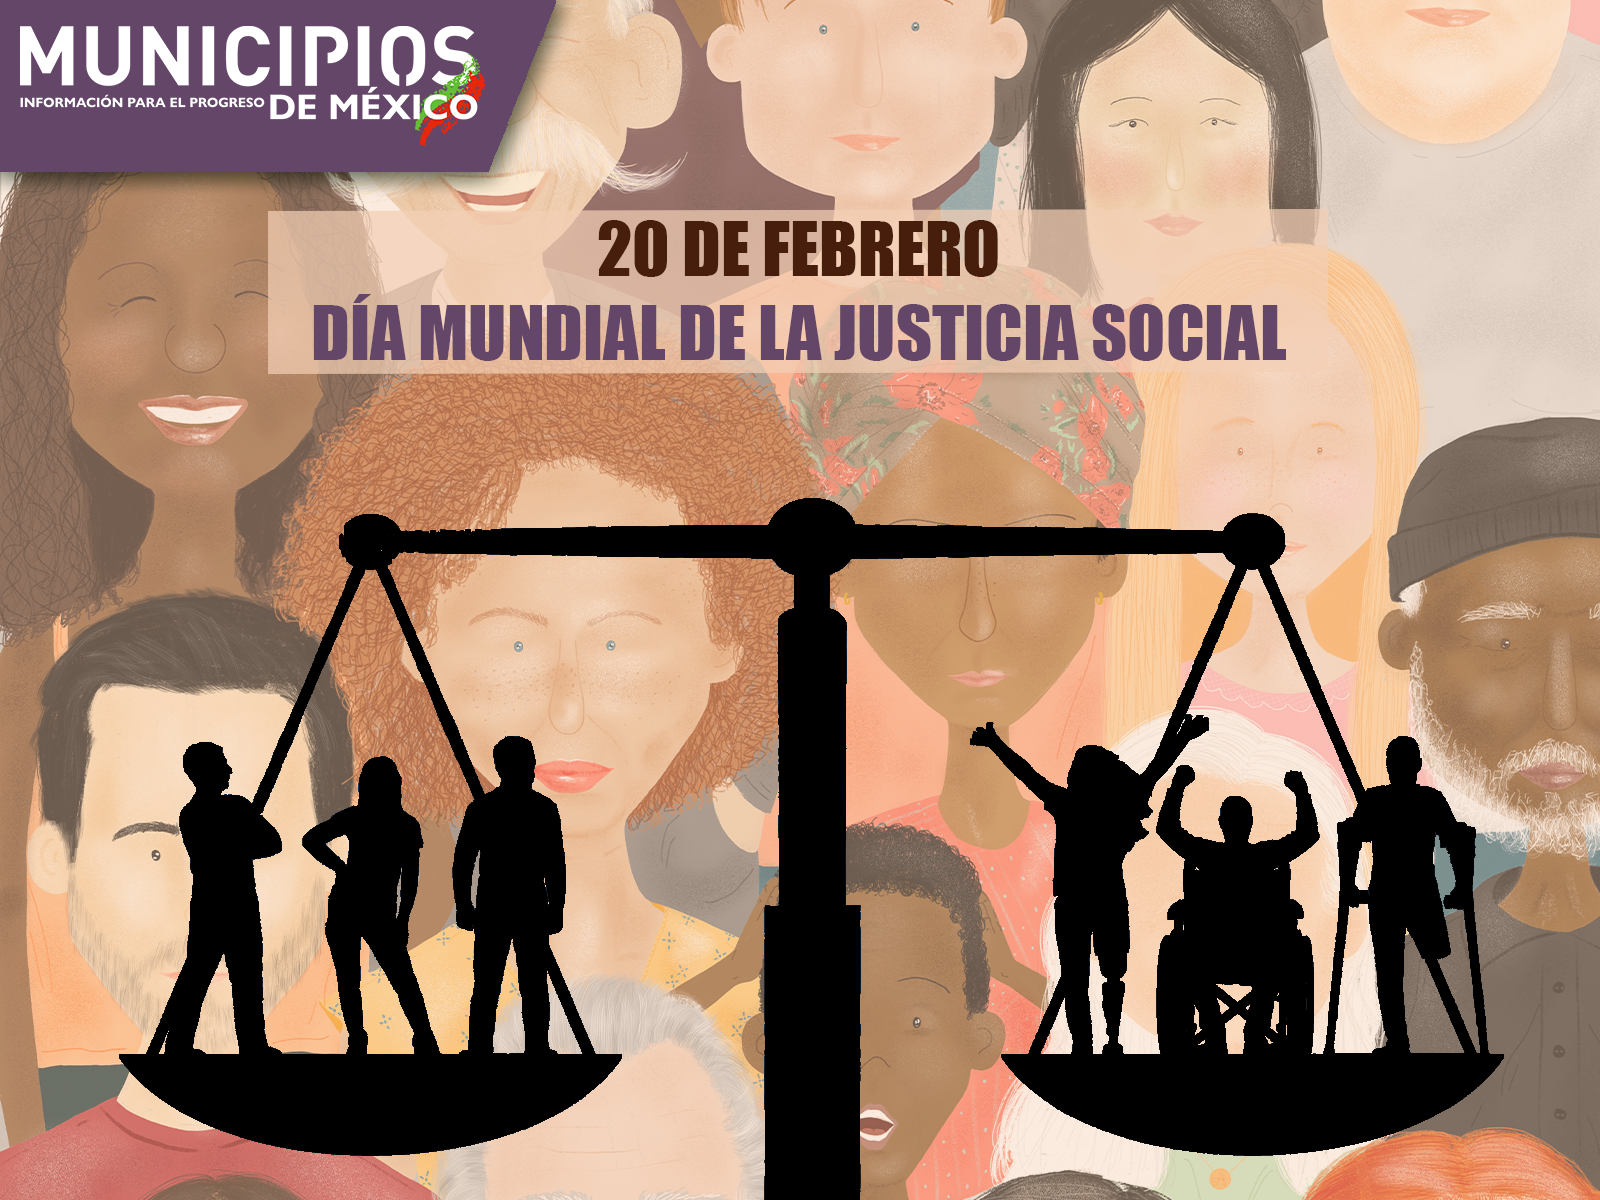 20 DE FEBRERO DÍA MUNDIAL DE LA JUSTICIA SOCIAL - Municipios de México